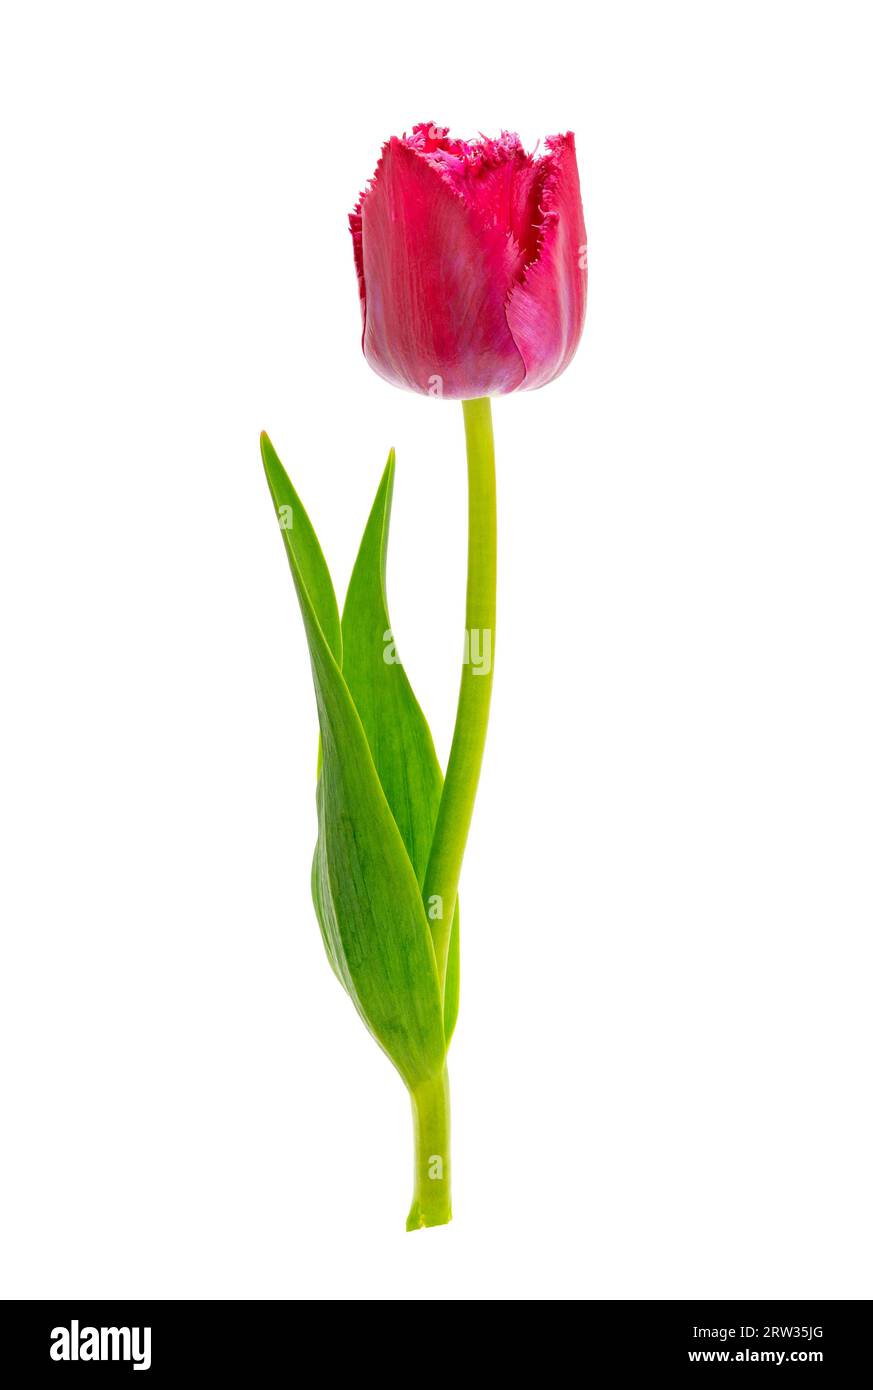 Beautiful tulip isolated on white background Stock Photo